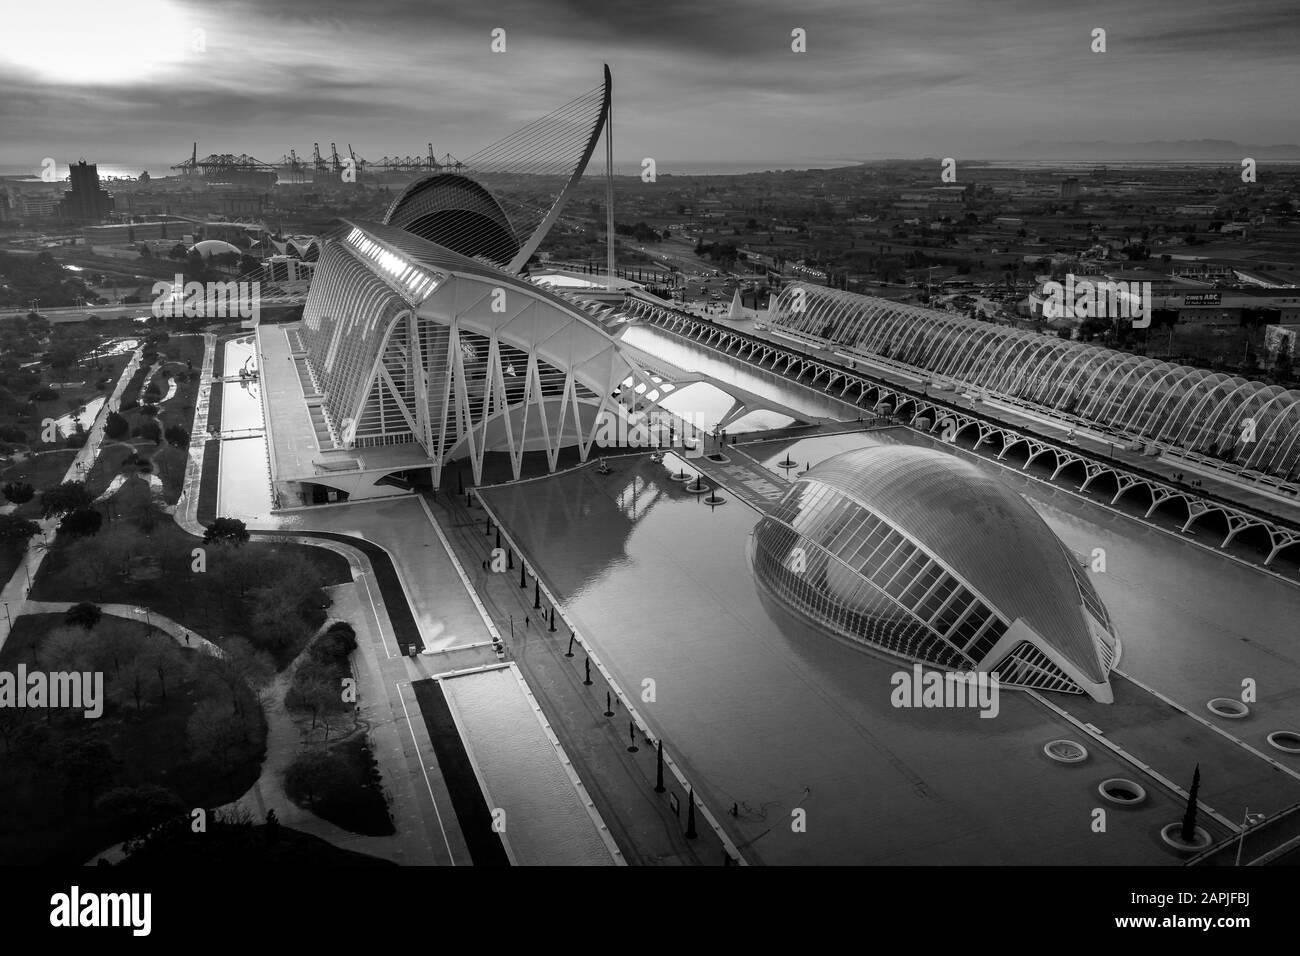 Vista aérea del amanecer de la ciudad o de las artes y las ciencias en Valencia España con el planetario Henisferic, el centro de ciencia del príncipe Felipe y el l'Agora Foto de stock